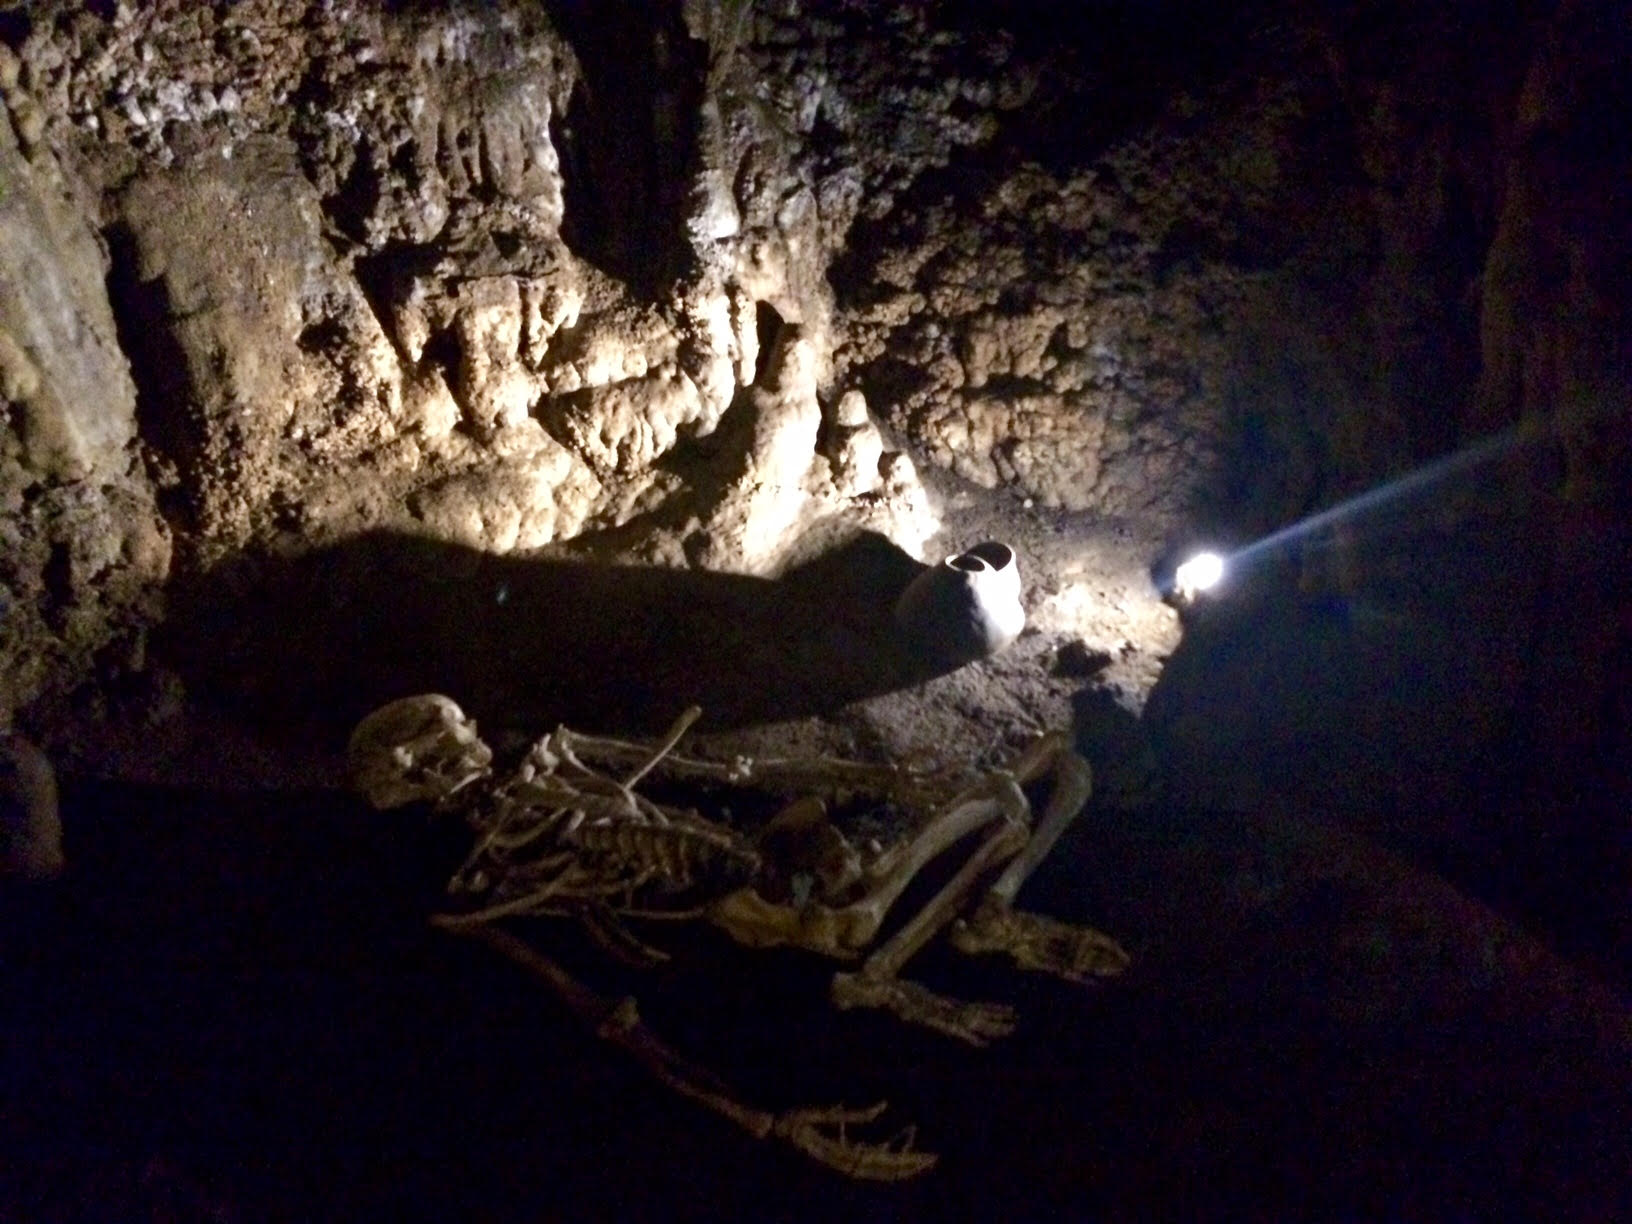 Cueva de los Enebralejos. Prádena (Segovia)